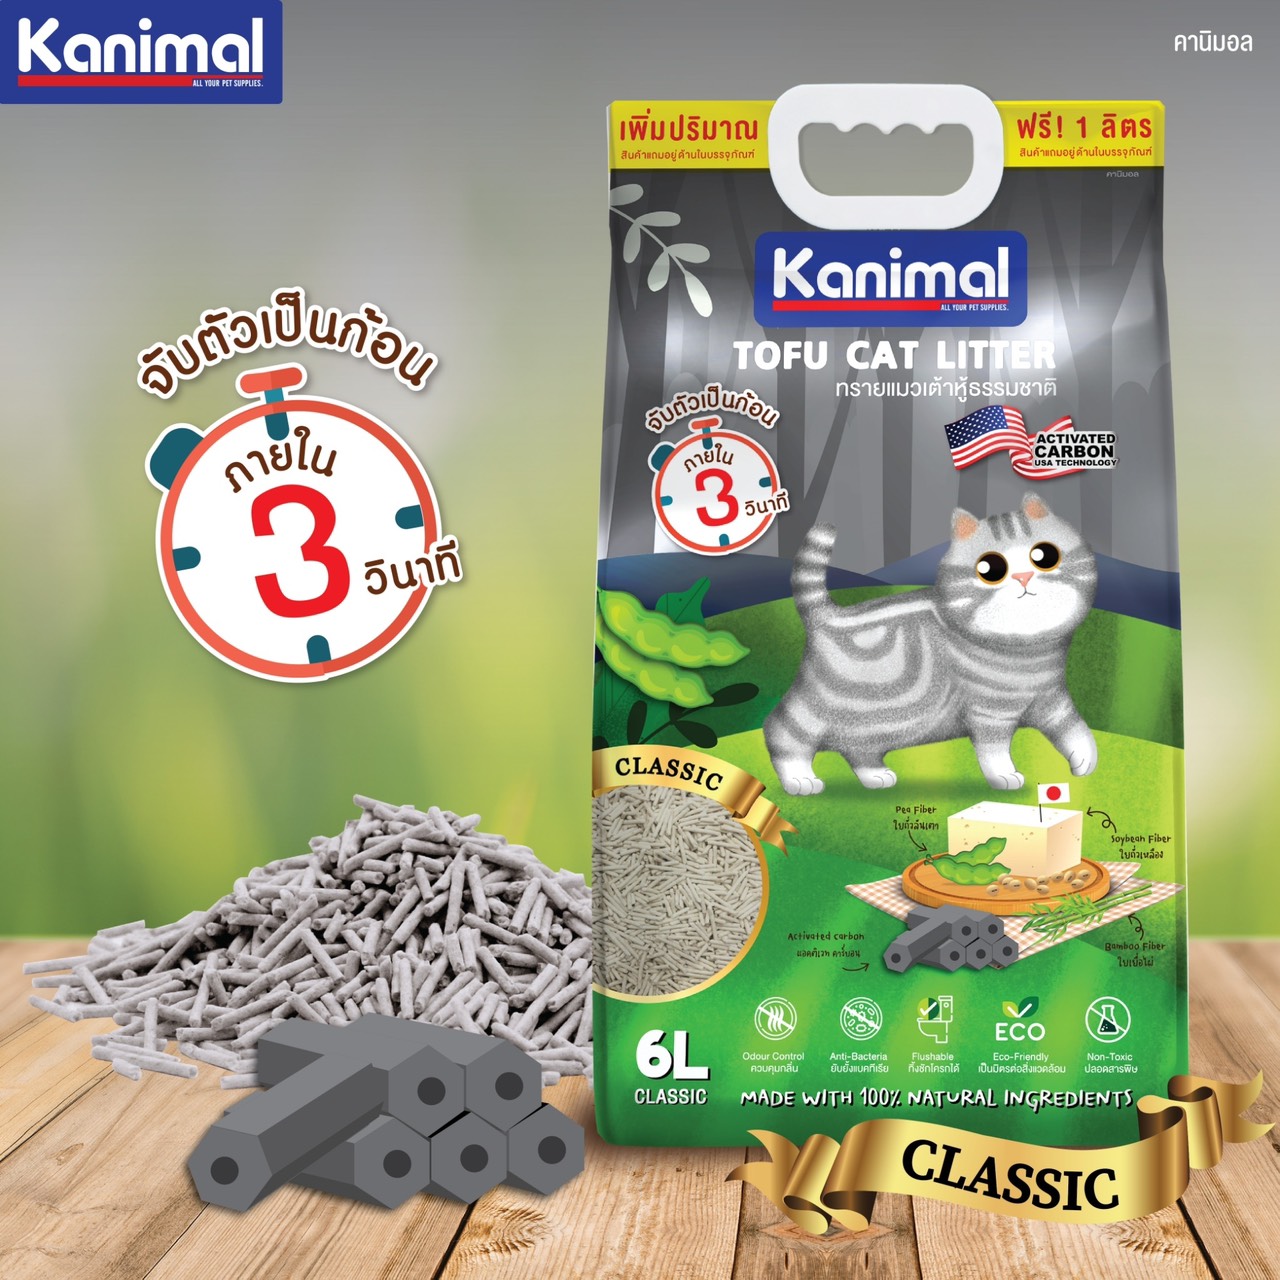 ข้อมูลเพิ่มเติมของ Kanimal Classic 6L. ทรายแมวเต้าหู้ สูตร Classic ผสมคาร์บอน จับตัวเป็นก้อนภายใน 3 วิ ทิ้งชักโครกได้ สำหรับแมวทุกวัย (6+1 ลิตร/2 ถุง)